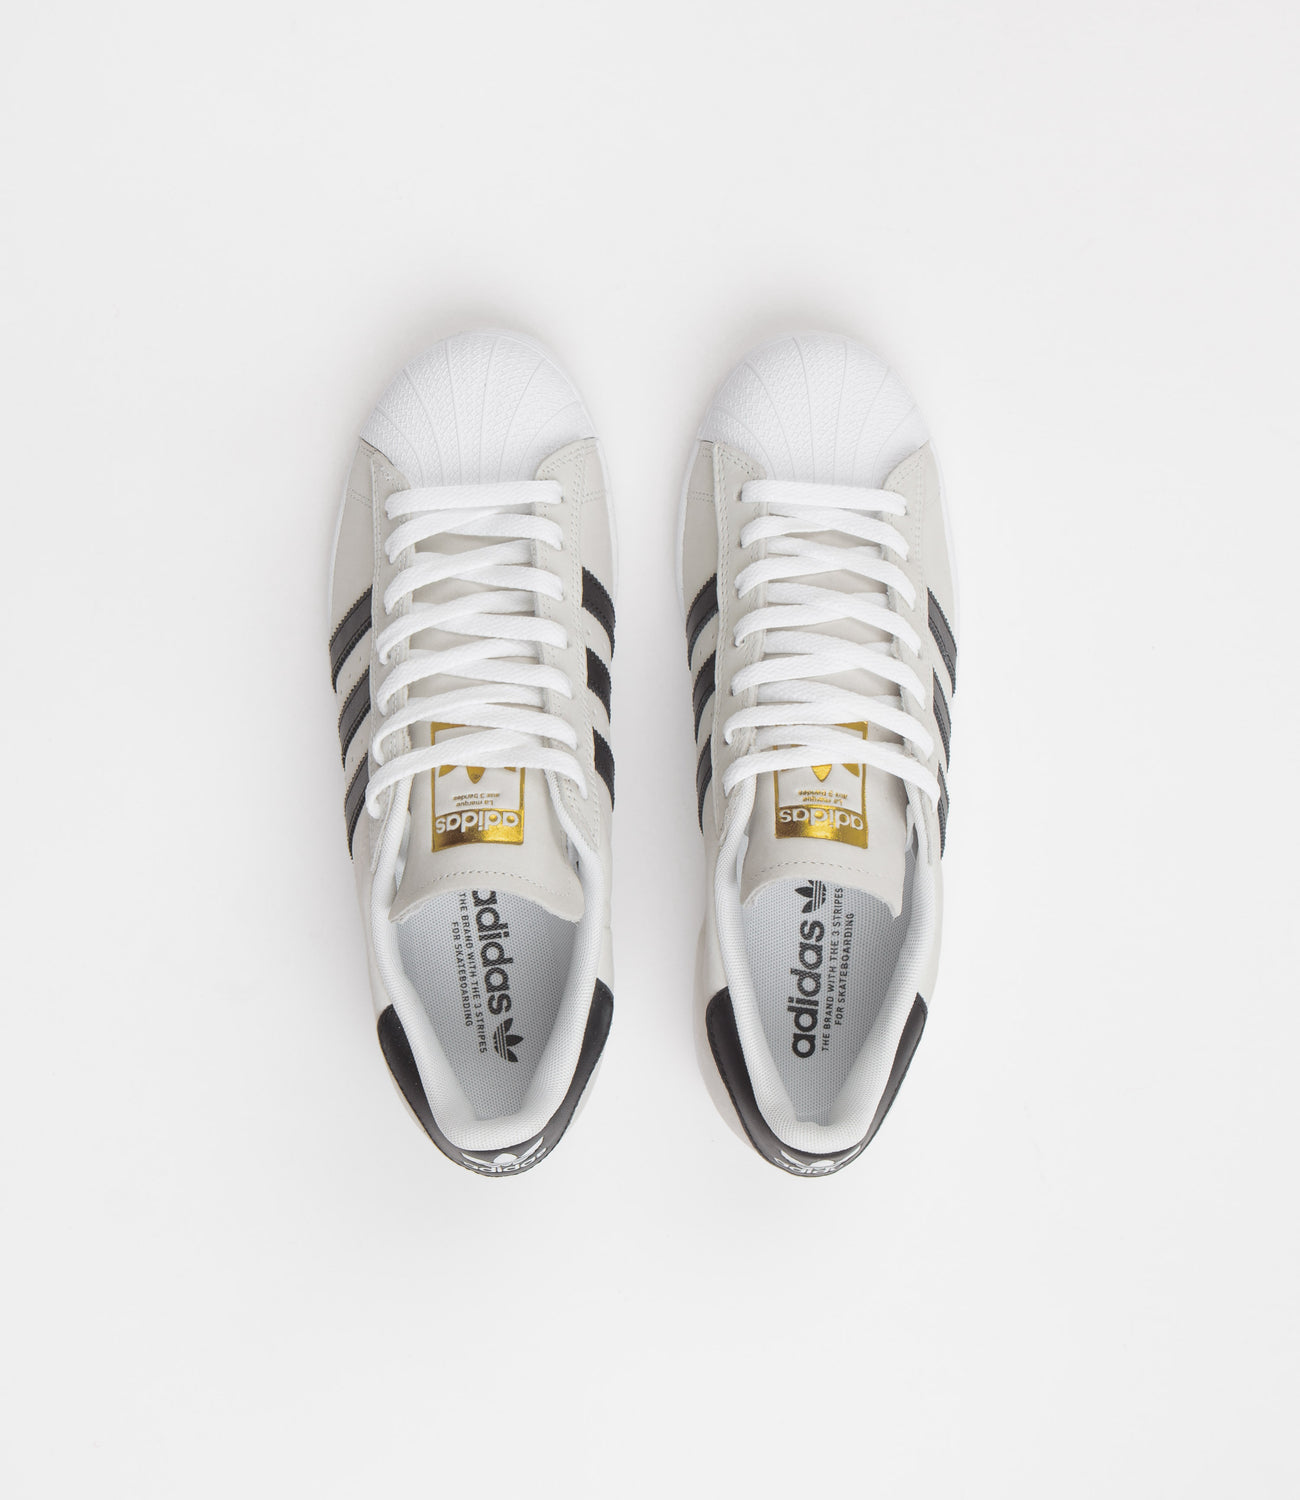 Malen Mijnwerker Uil Adidas Superstar Shoes - White / Core Black / Gold Metallic | Flatspot